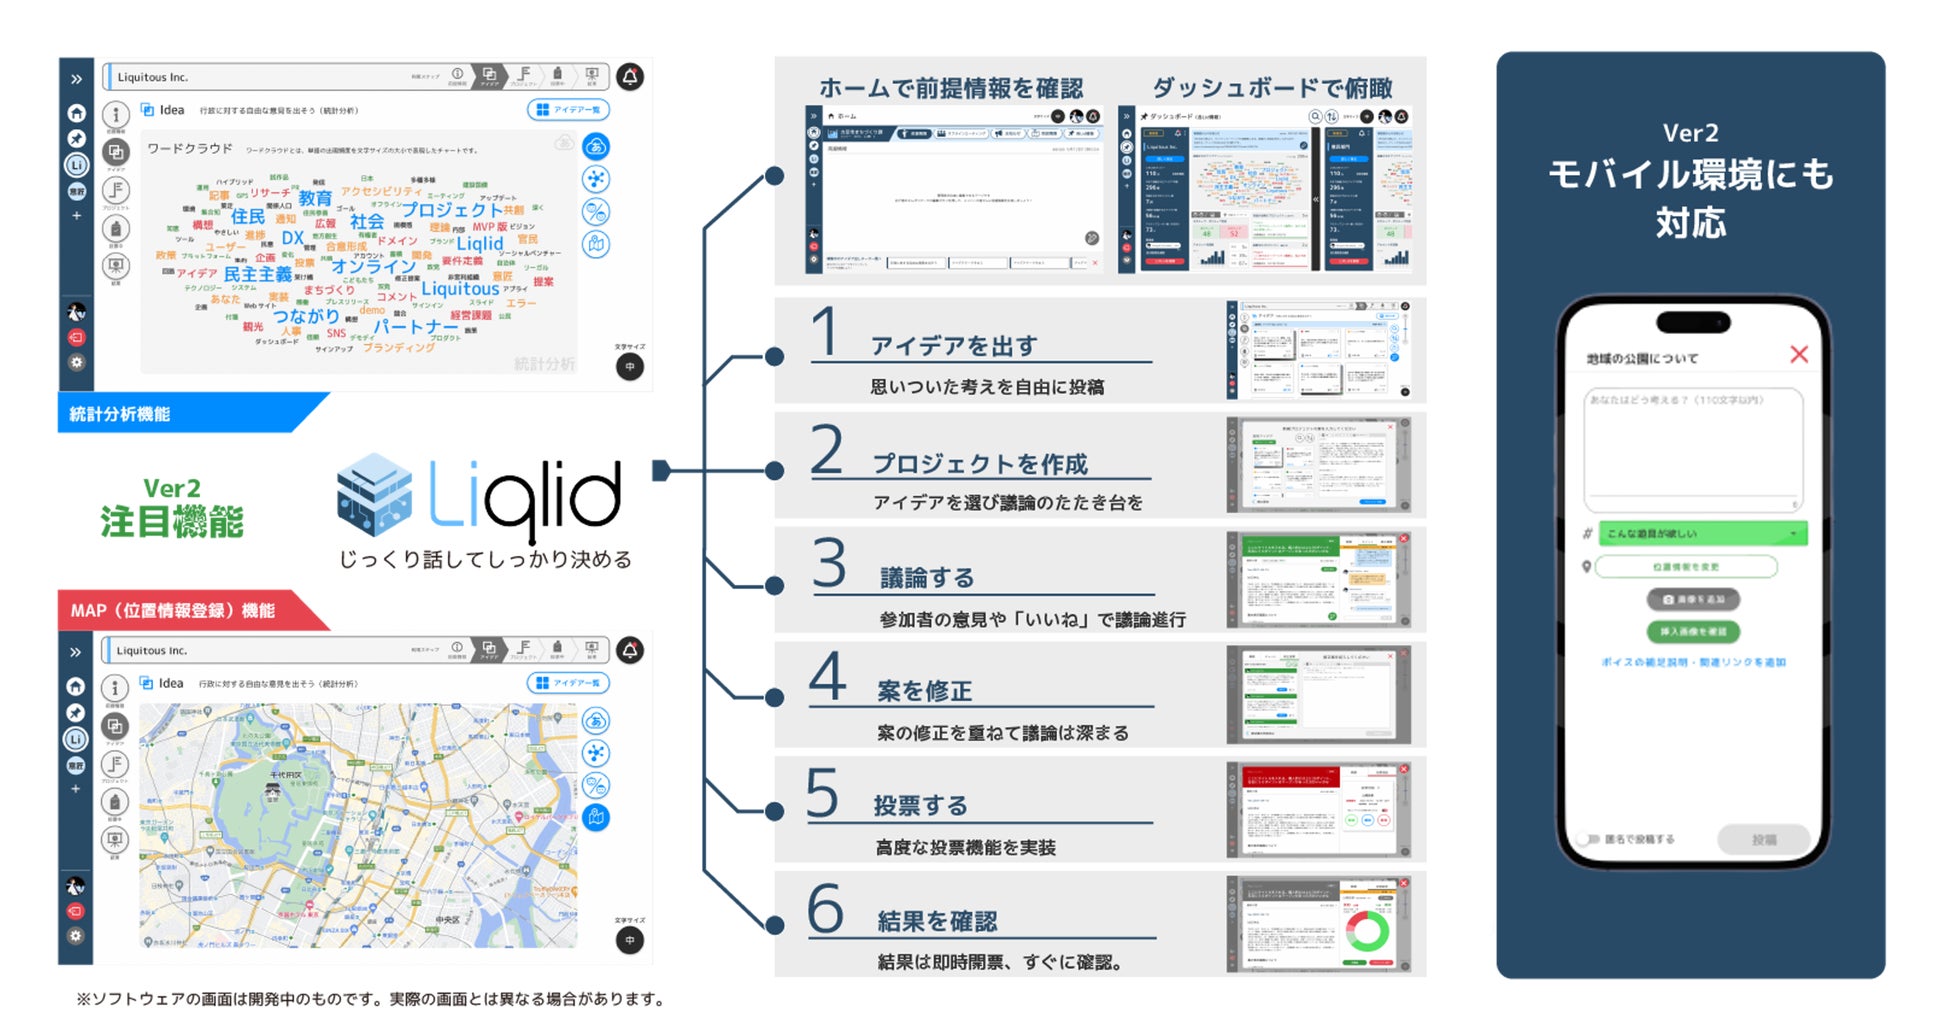 Liquitous、市民や行政職員の皆さんのアイデアや声をもとに、独自開発の市民参加型合意形成プラットフォーム「Liqlid」の新規バージョンをリリースのサブ画像1